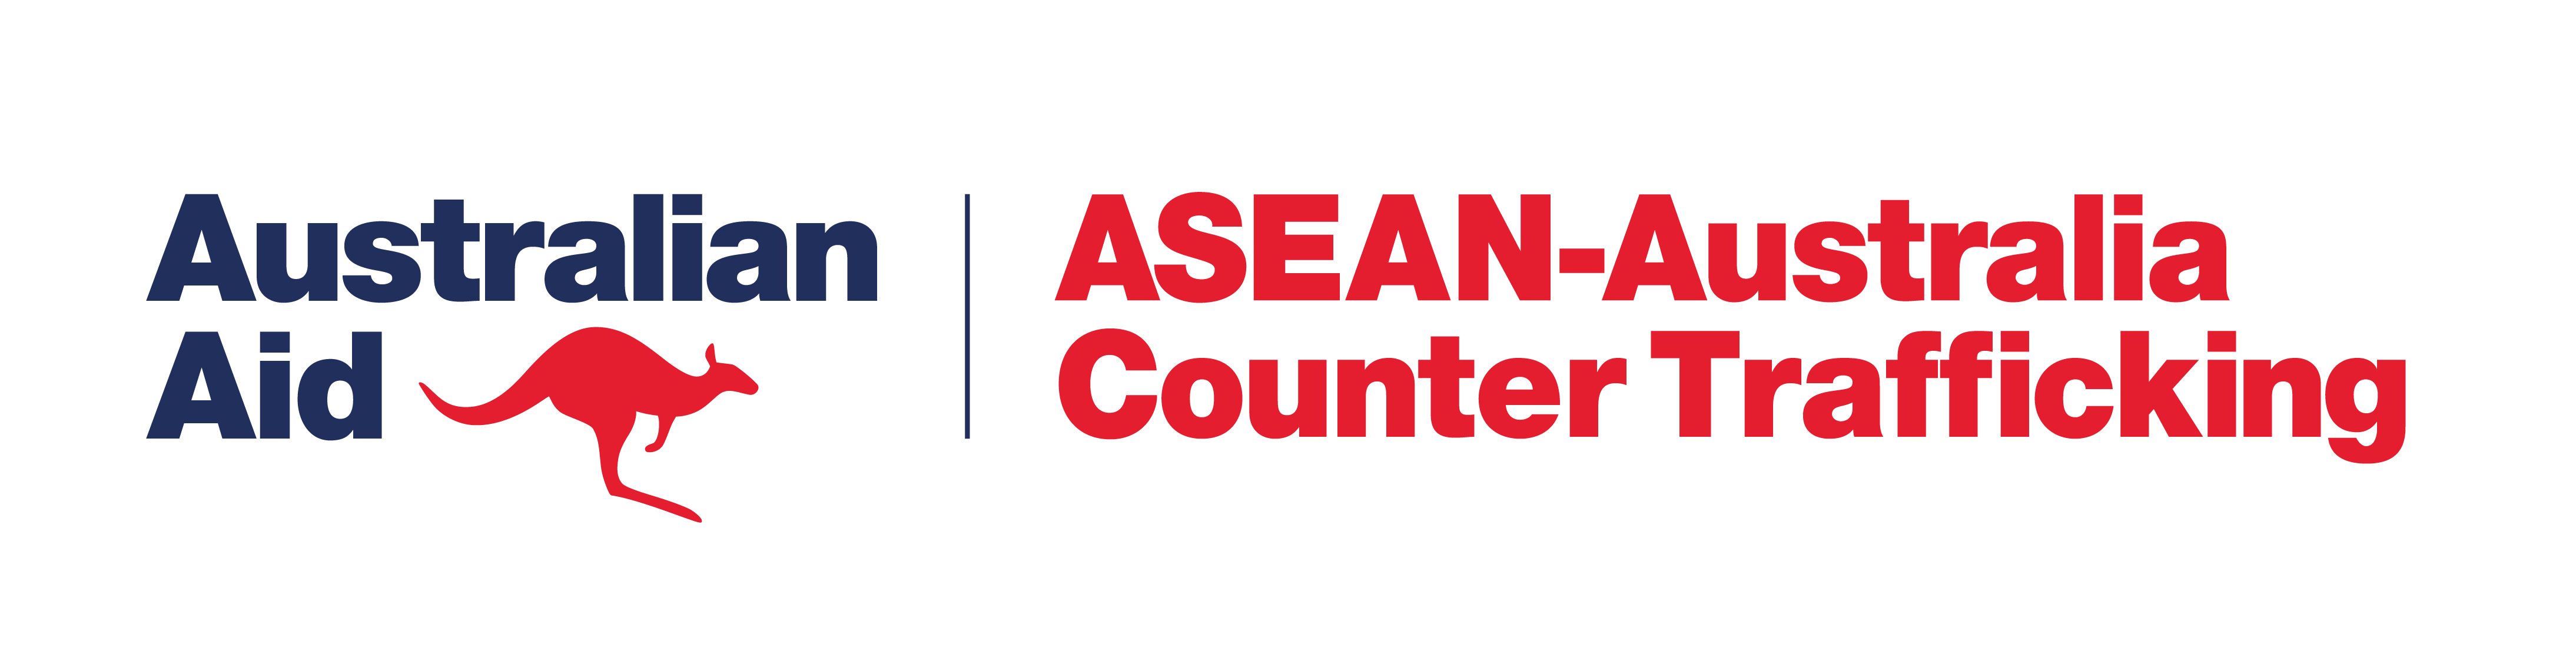 ASEAN ACT logosASEAN-ACT_RGB